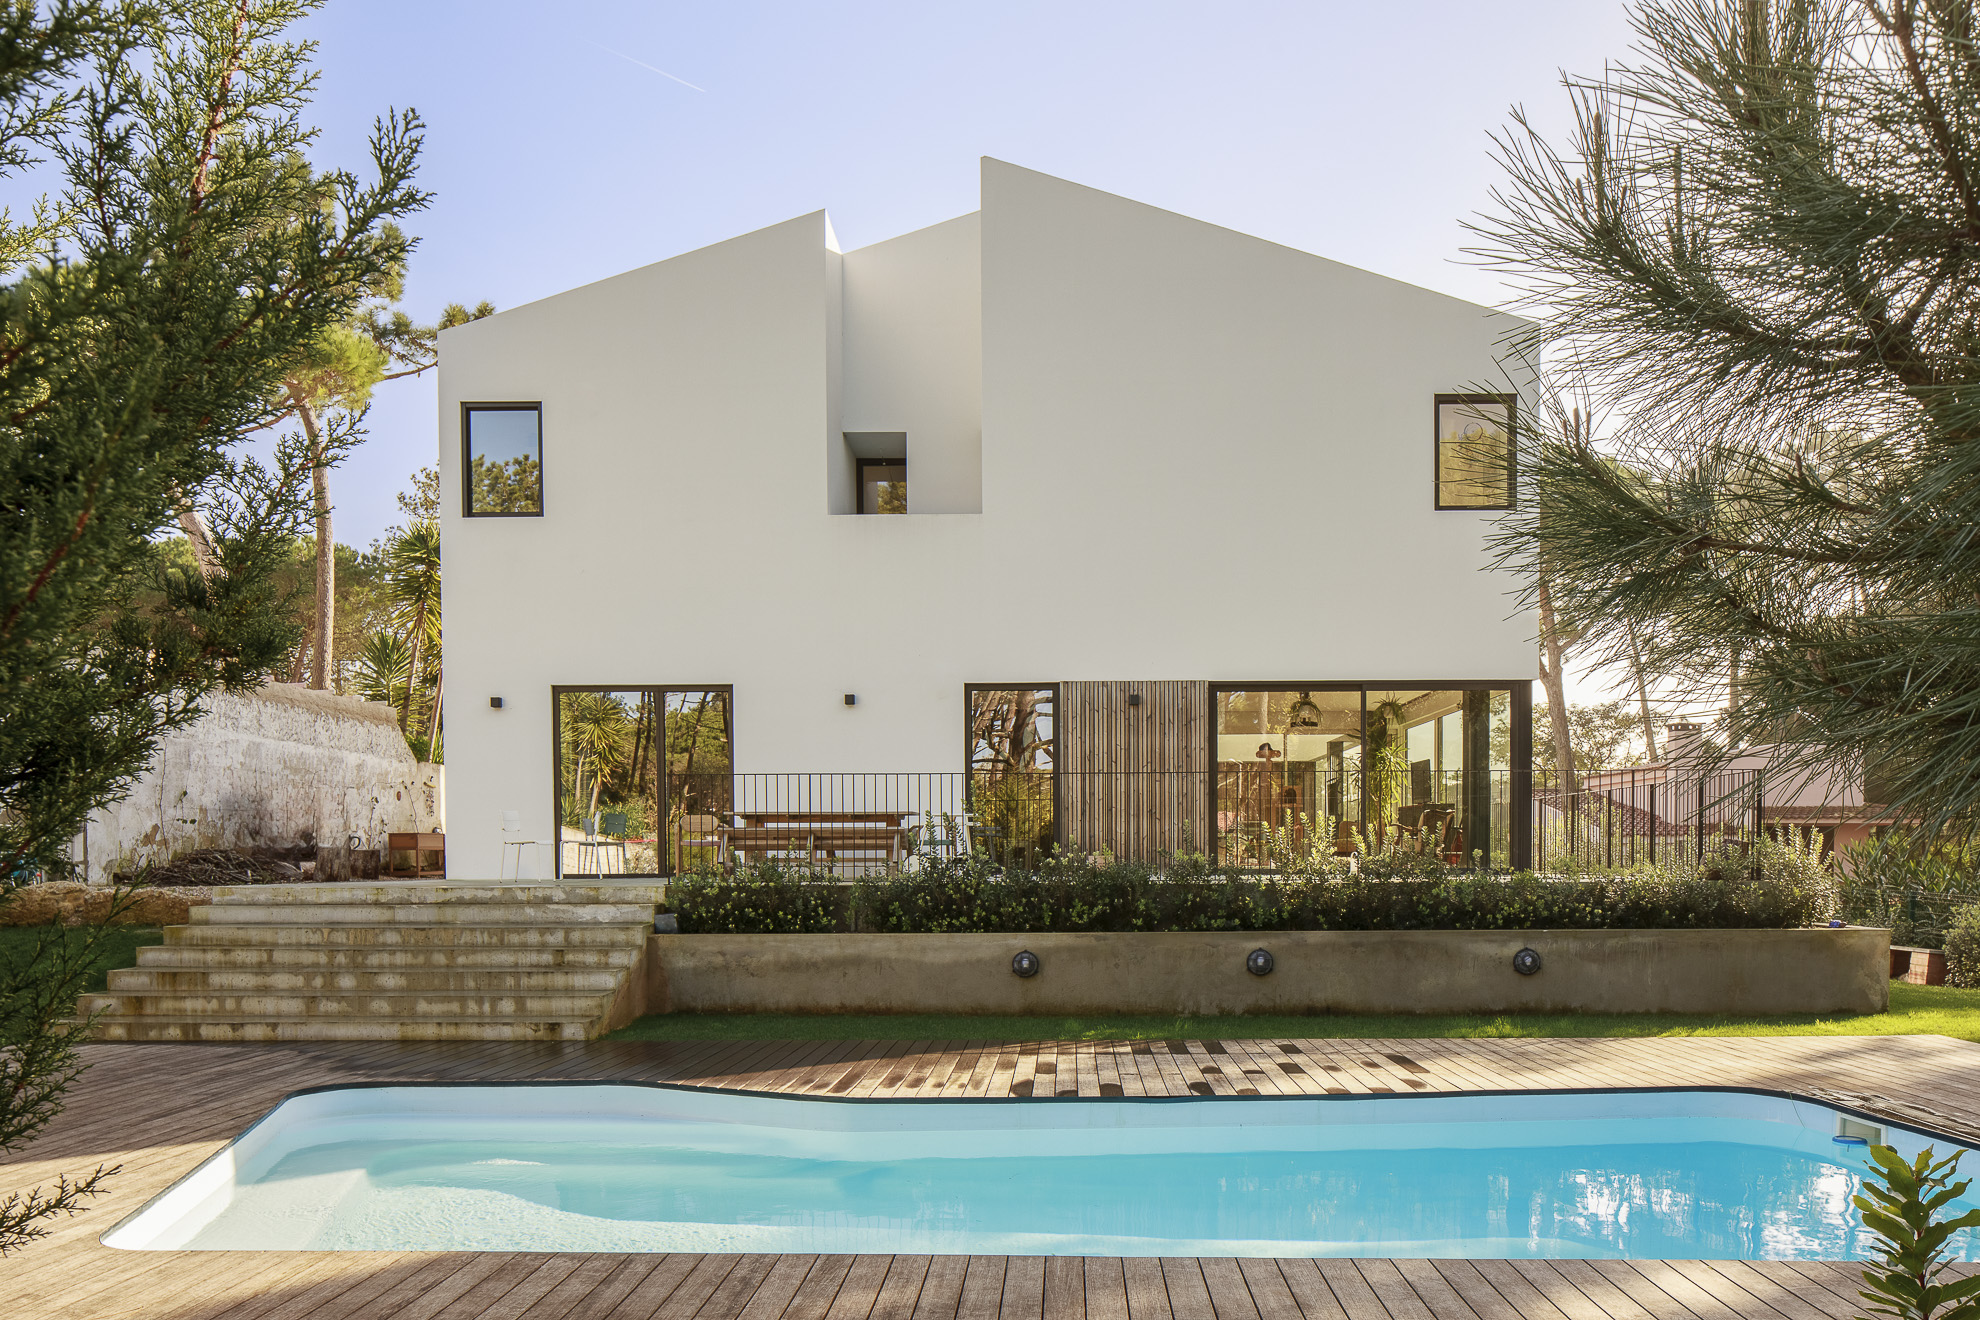 Casa MH em Sintra com Arquitectura Esquissos e fotografias de Nuno Almendra Sintra Portugal Arquitectos Architecture Architects Housing House Beach